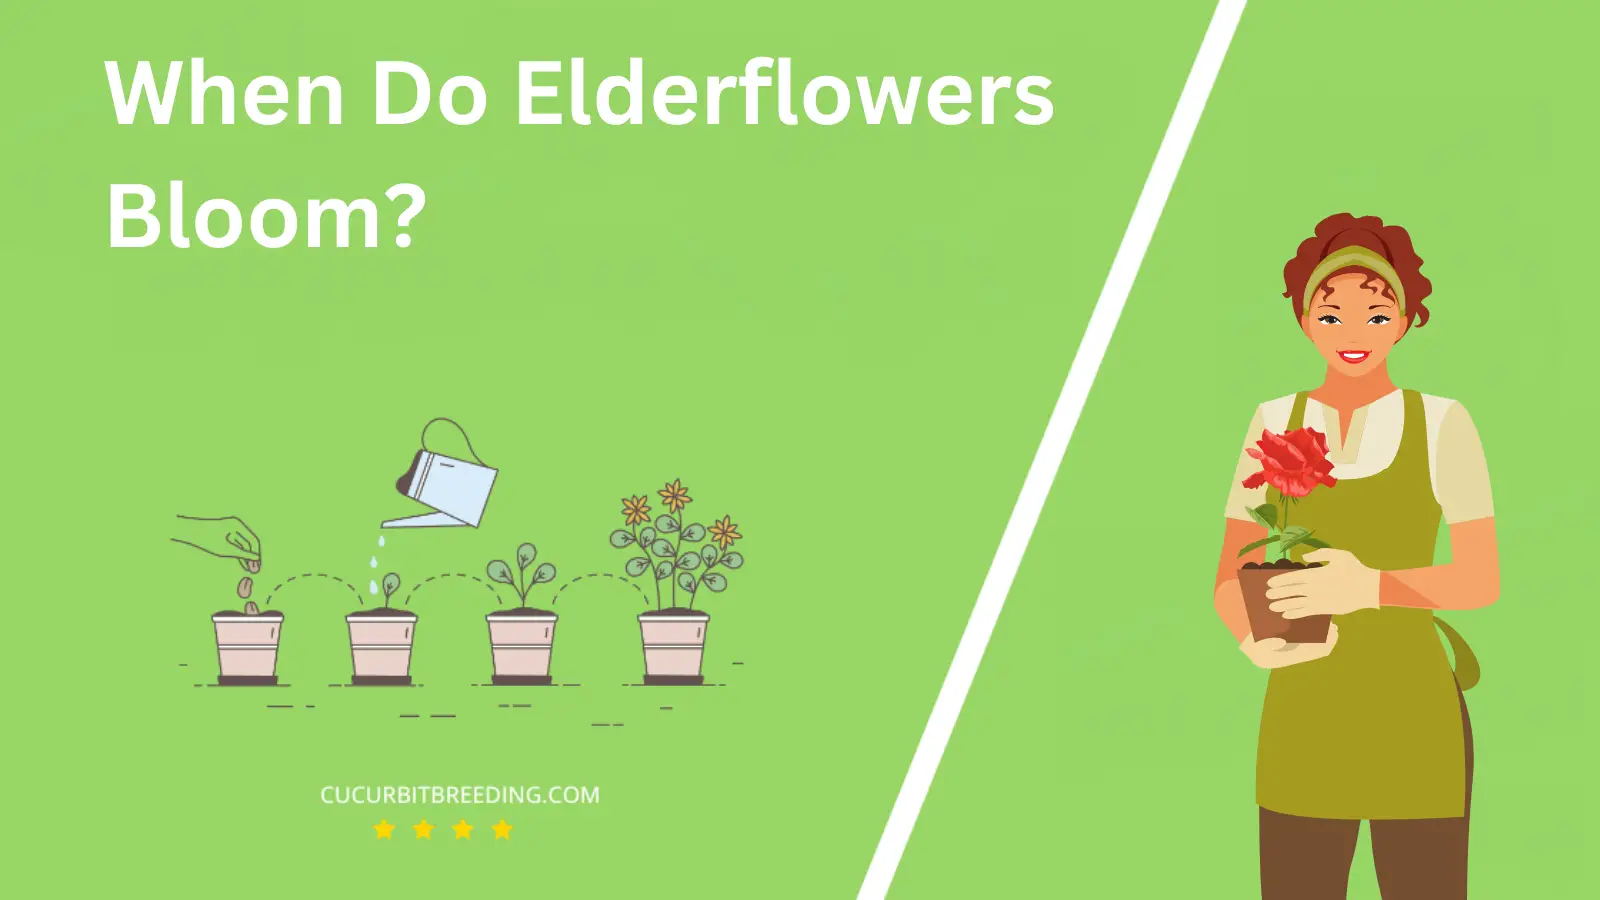 When Do Elderflowers Bloom?